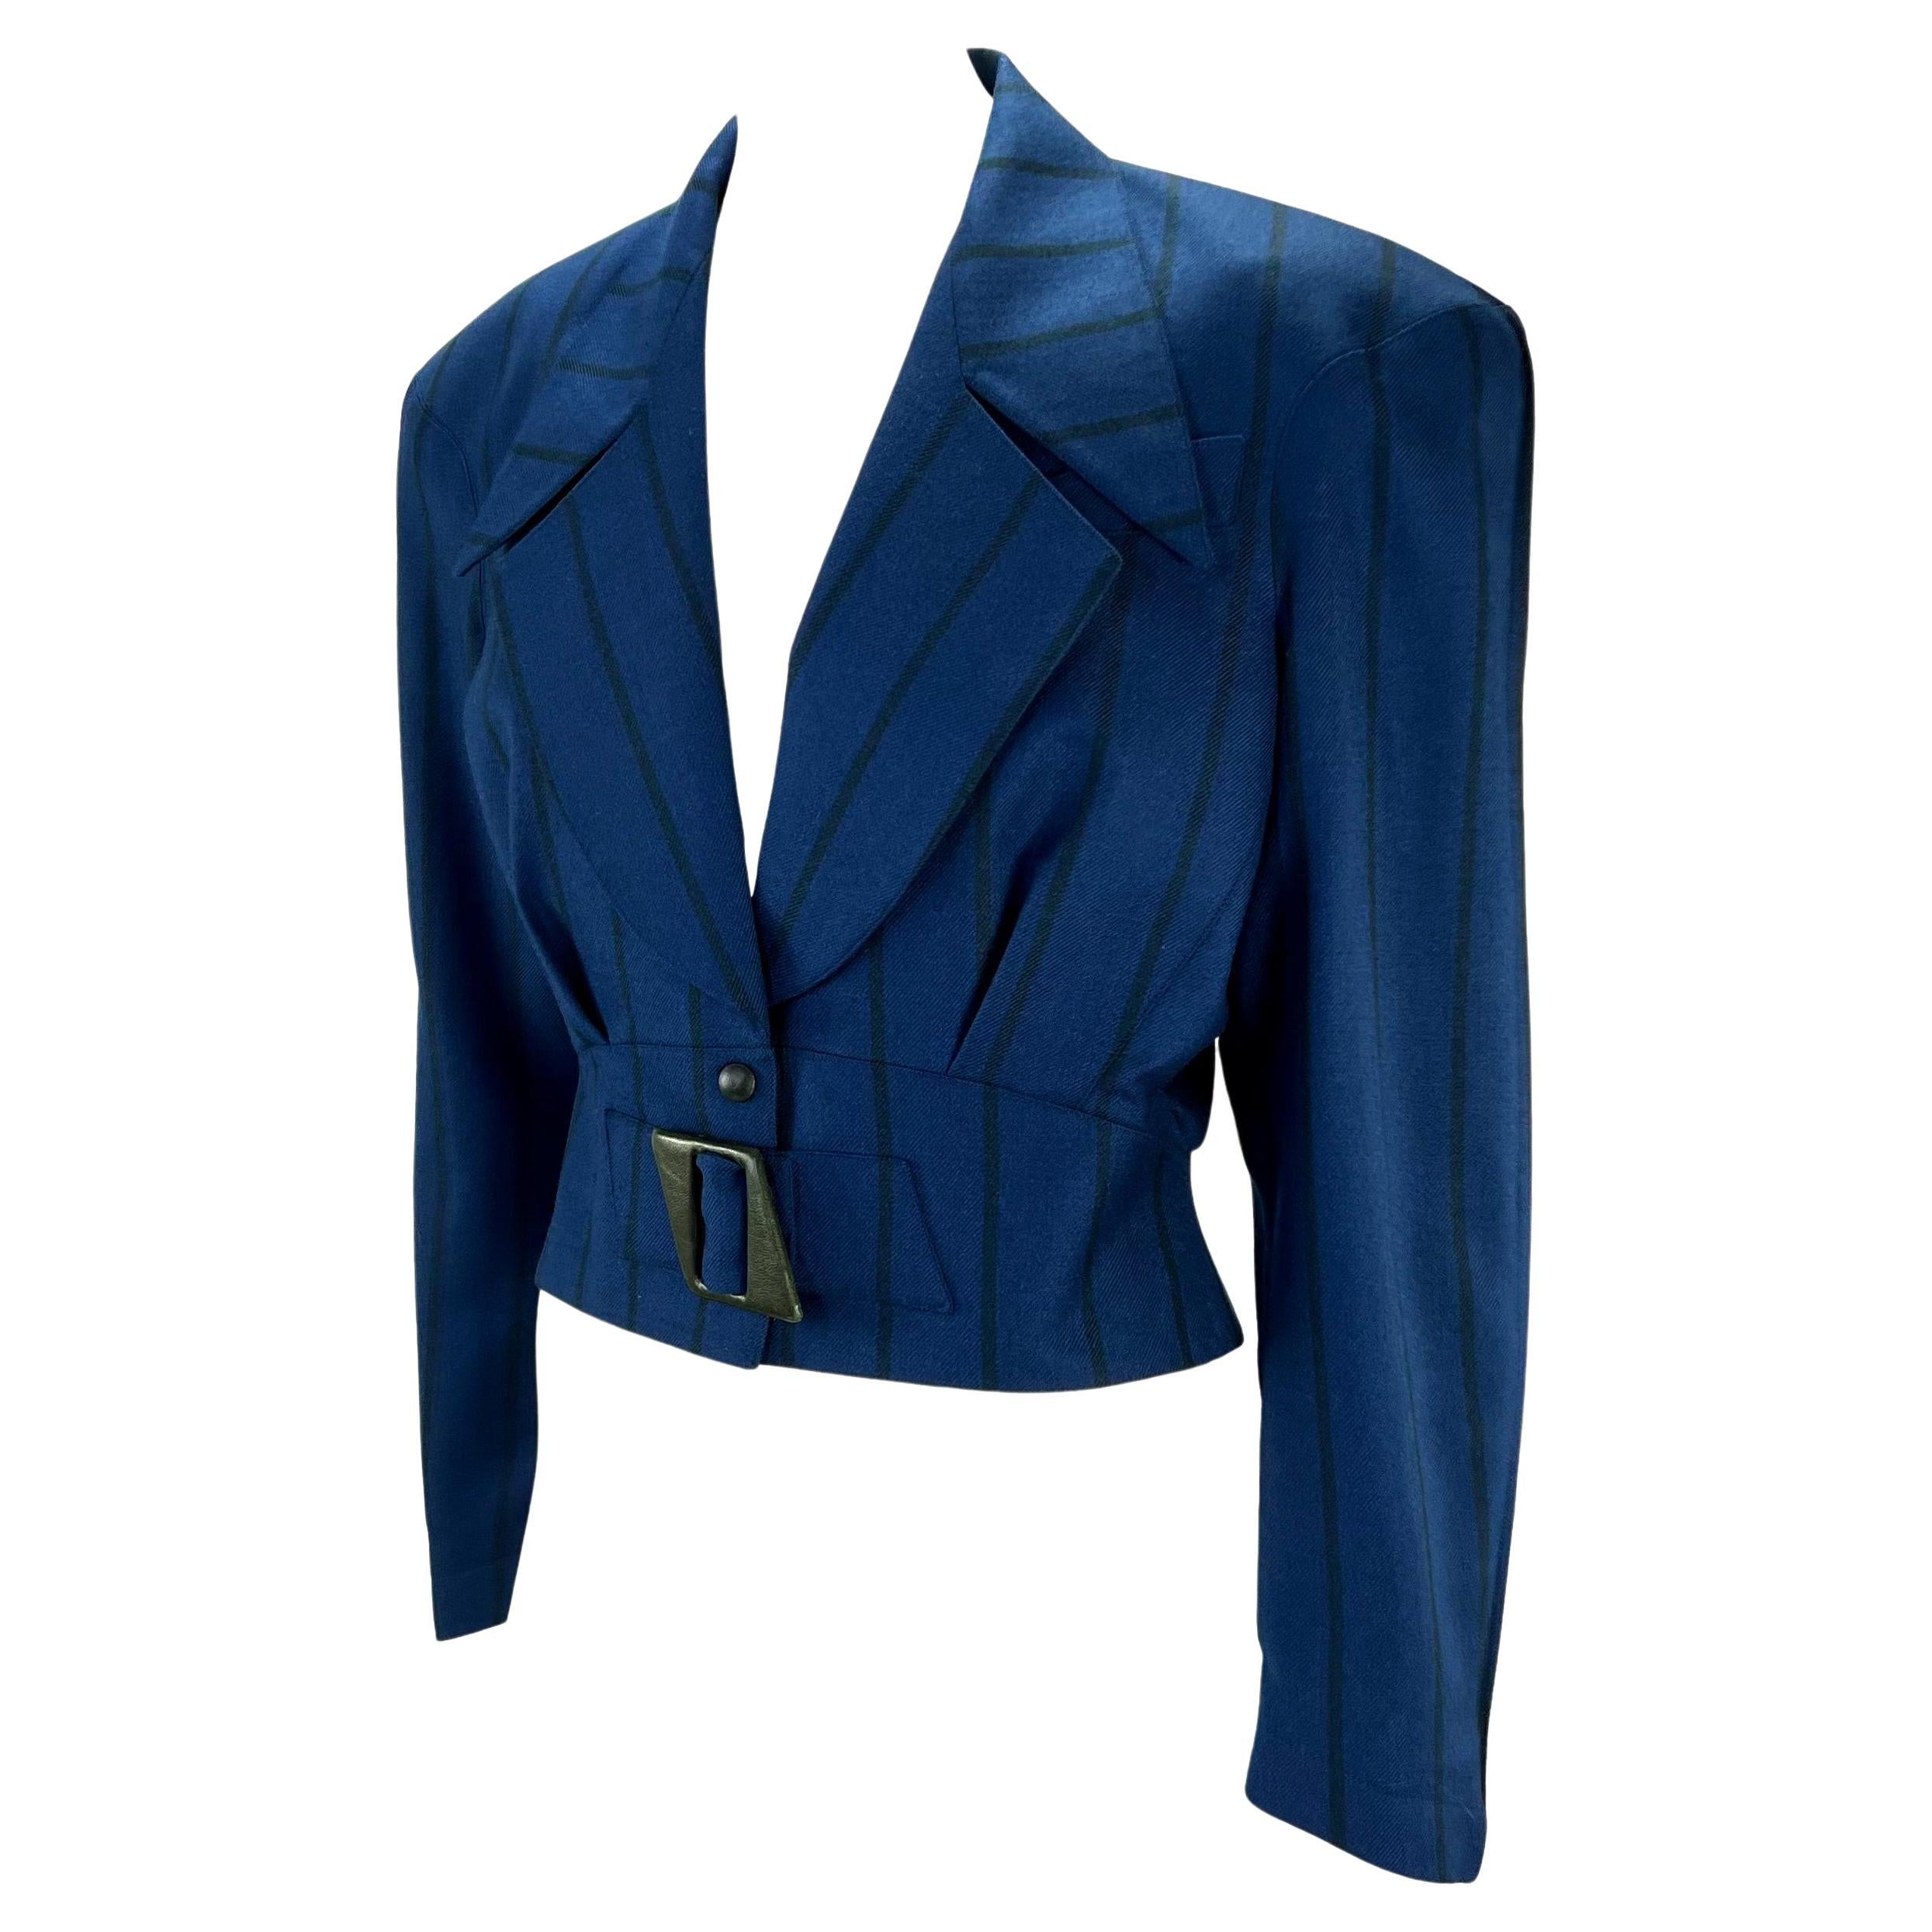 Présentation d'un blazer Thierry Mugler bleu à rayures, conçu par Manfred Mugler. Datant des années 1980, ce blazer en laine peignée présente la structure et la taille cintrée qui ont fait la renommée de Mugler. La veste présente de larges